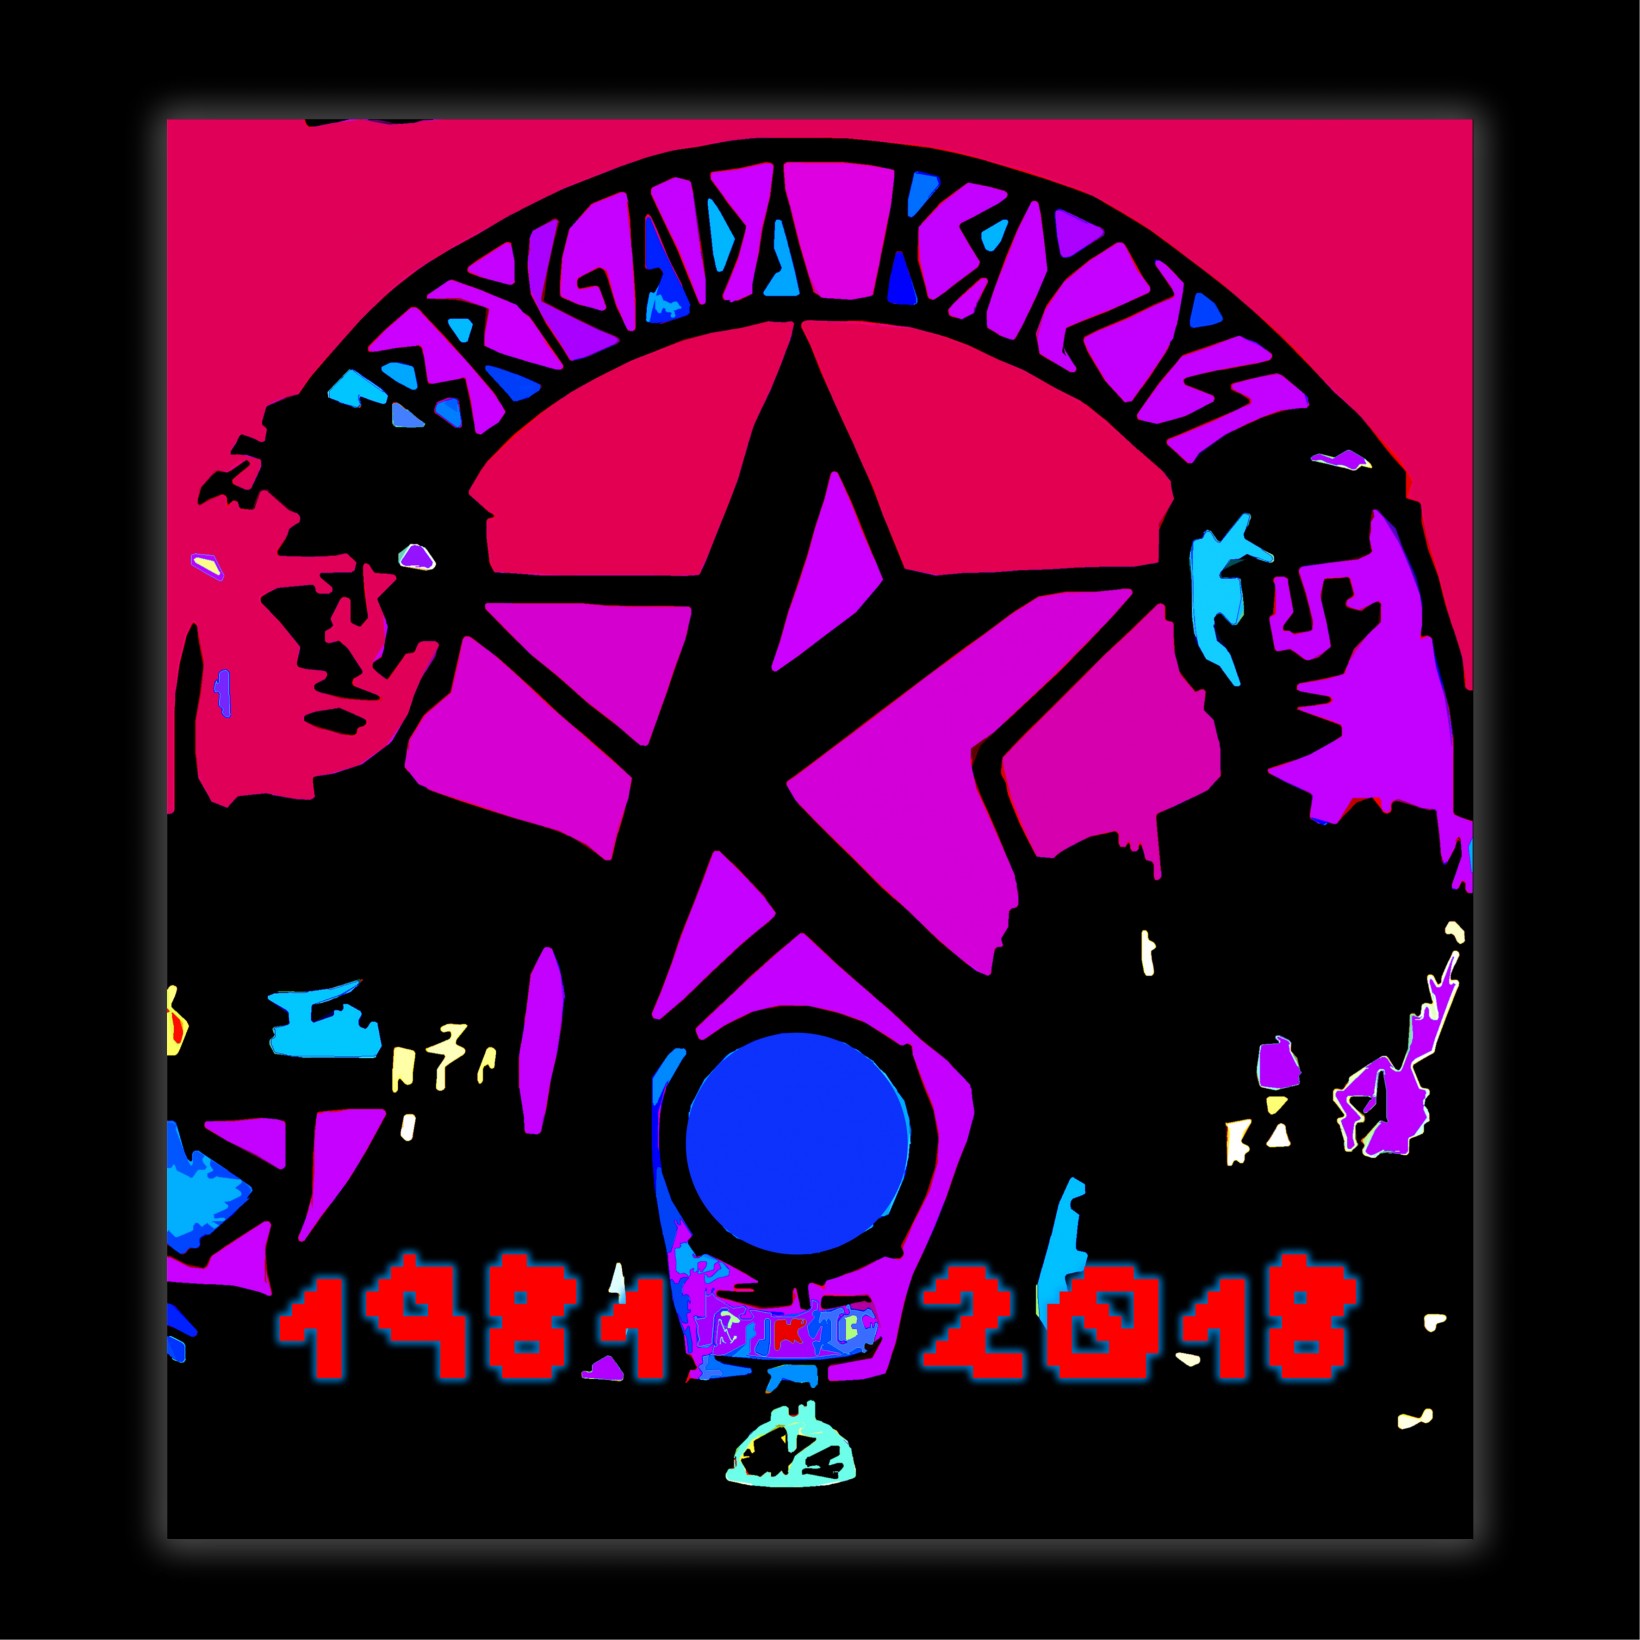 Grafika w jaskrawych kolorach, dwóch muzyków, w środku logo Brygady Kryzys, 1981-2018